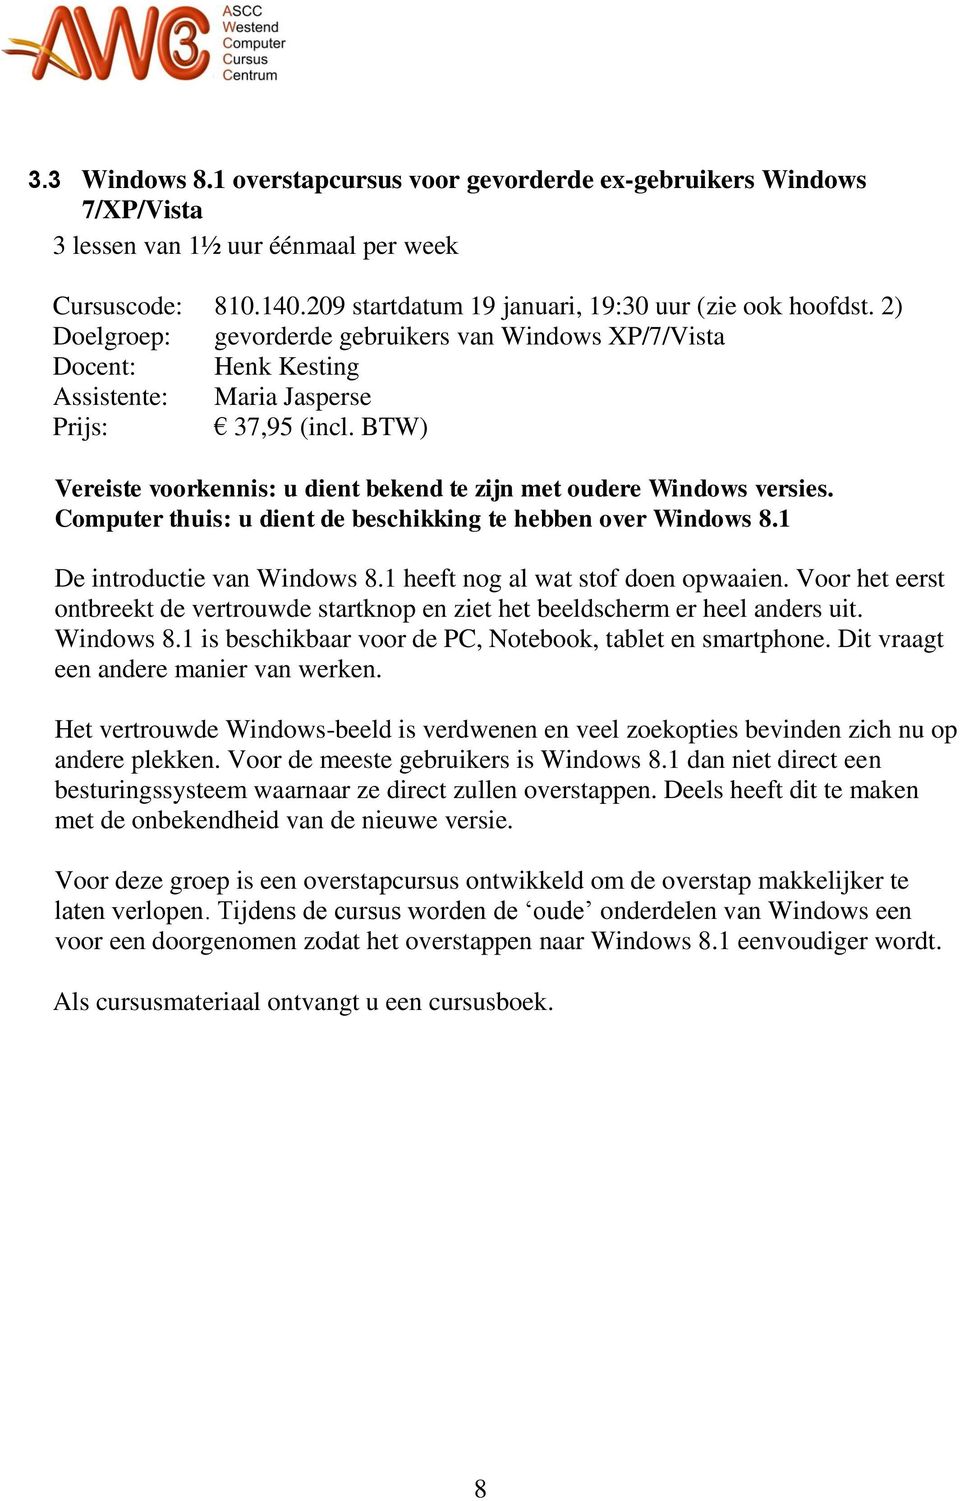 BTW) Vereiste voorkennis: u dient bekend te zijn met oudere Windows versies. Computer thuis: u dient de beschikking te hebben over Windows 8.1 De introductie van Windows 8.